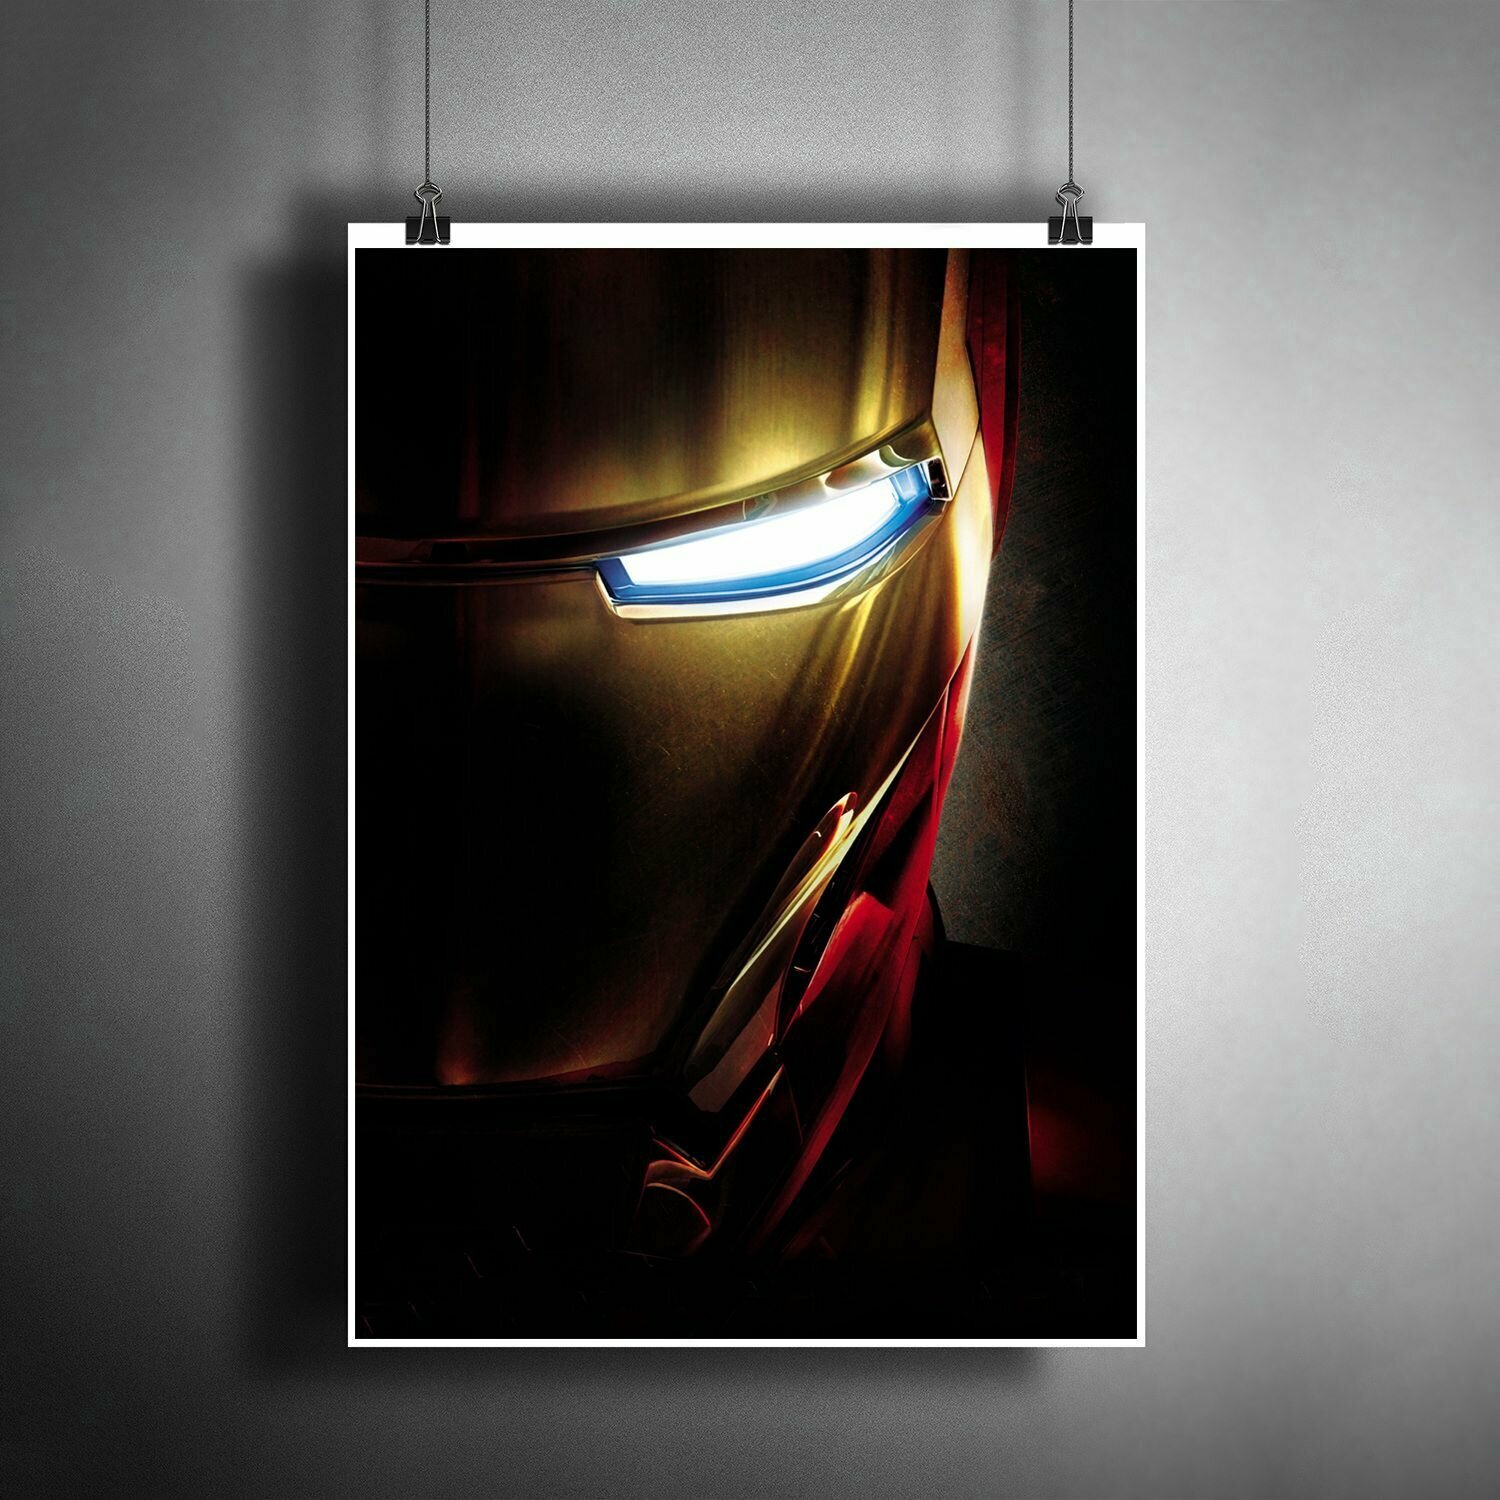 Постер плакат для интерьера "Фильм: Железный Человек. Комиксы Марвел. The Iron Man"/ Декор дома, офиса, комнаты A3 (297 x 420 мм)